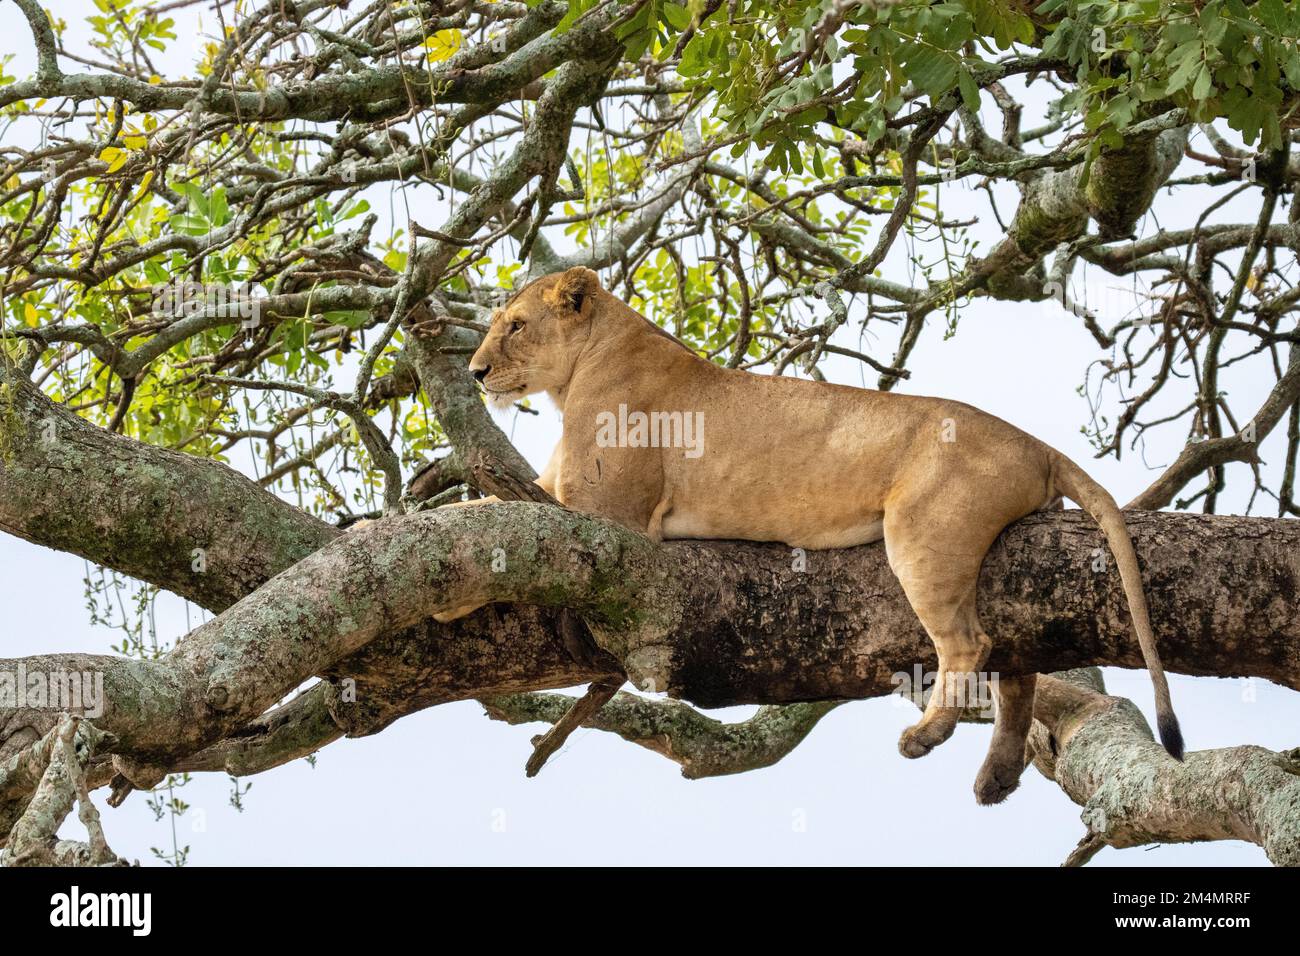 lioness se reposant dans un arbre photographié au parc national du lac Manyara. Accueil des lions d'escalade d'arbres, Arusha, Tanzanie Banque D'Images